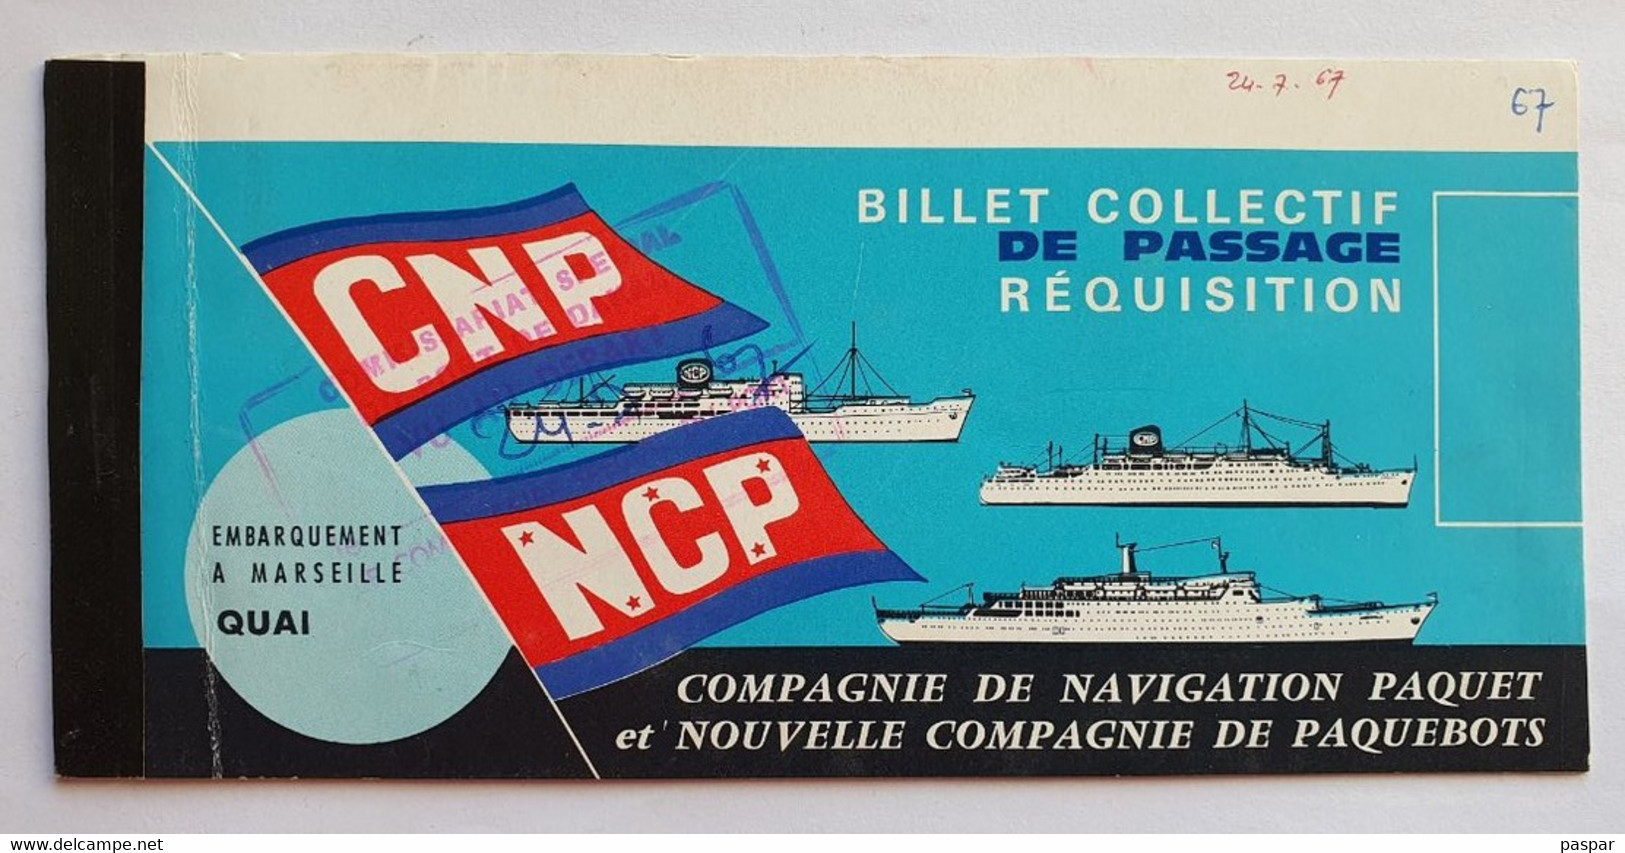 COMPAGNIE DE NAVIGATION PAQUET - Billet De Passage Réquisition DAKAR MARSEILLE - Ancerville - 1967 - Monde